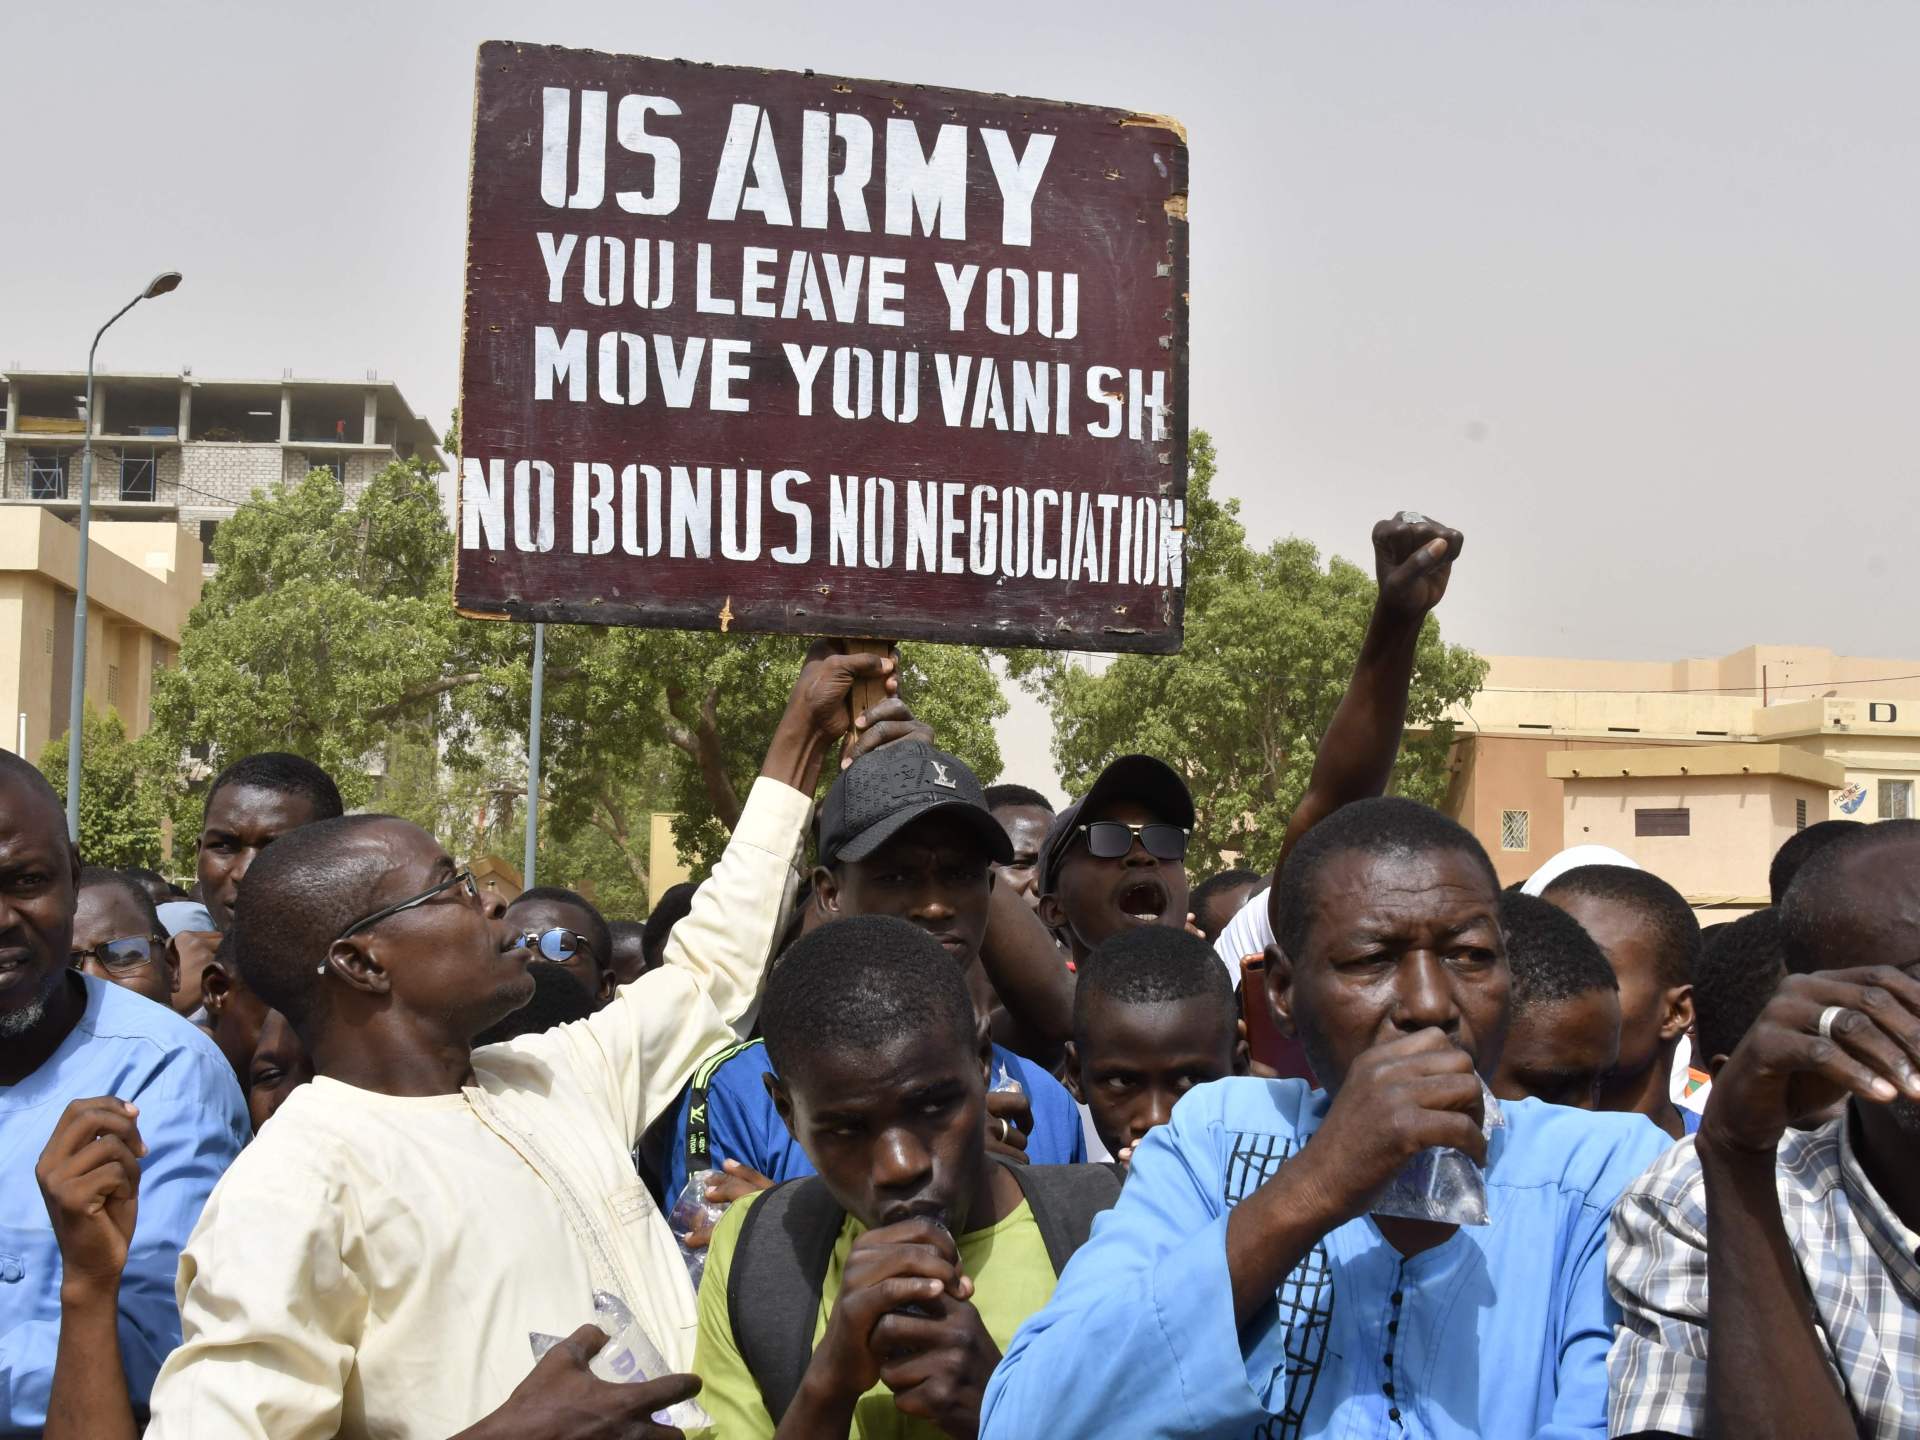 الولايات المتحدة توافق على سحب قواتها من النيجر | أخبار – البوكس نيوز